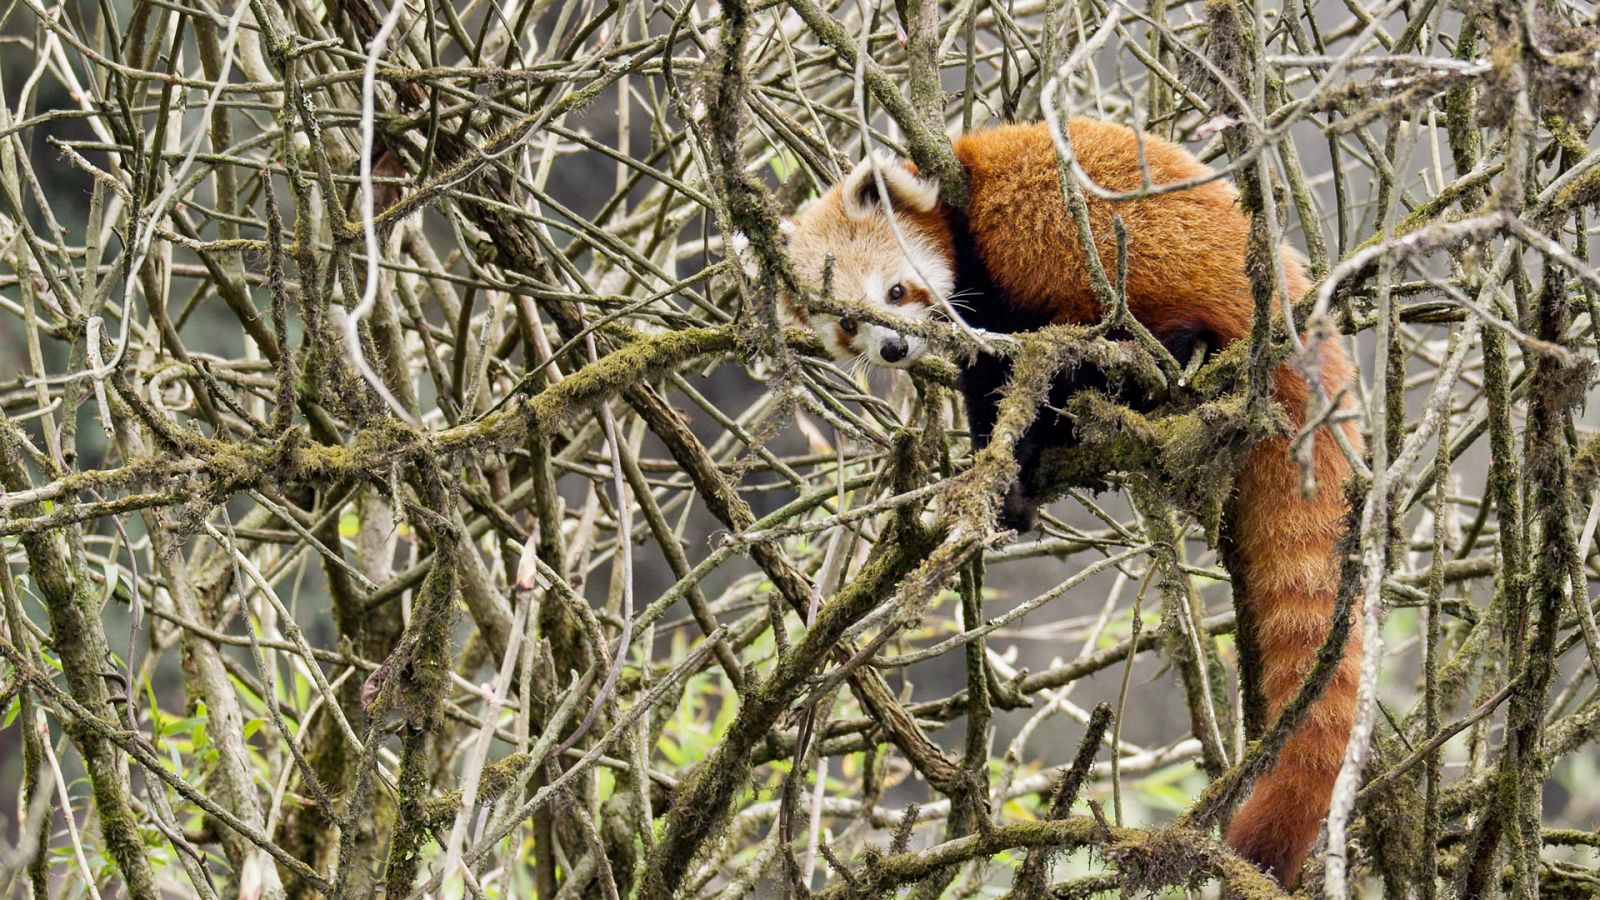 Somos documentales - El panda rojo: el animal más bonito del mundo - Documental en RTVE